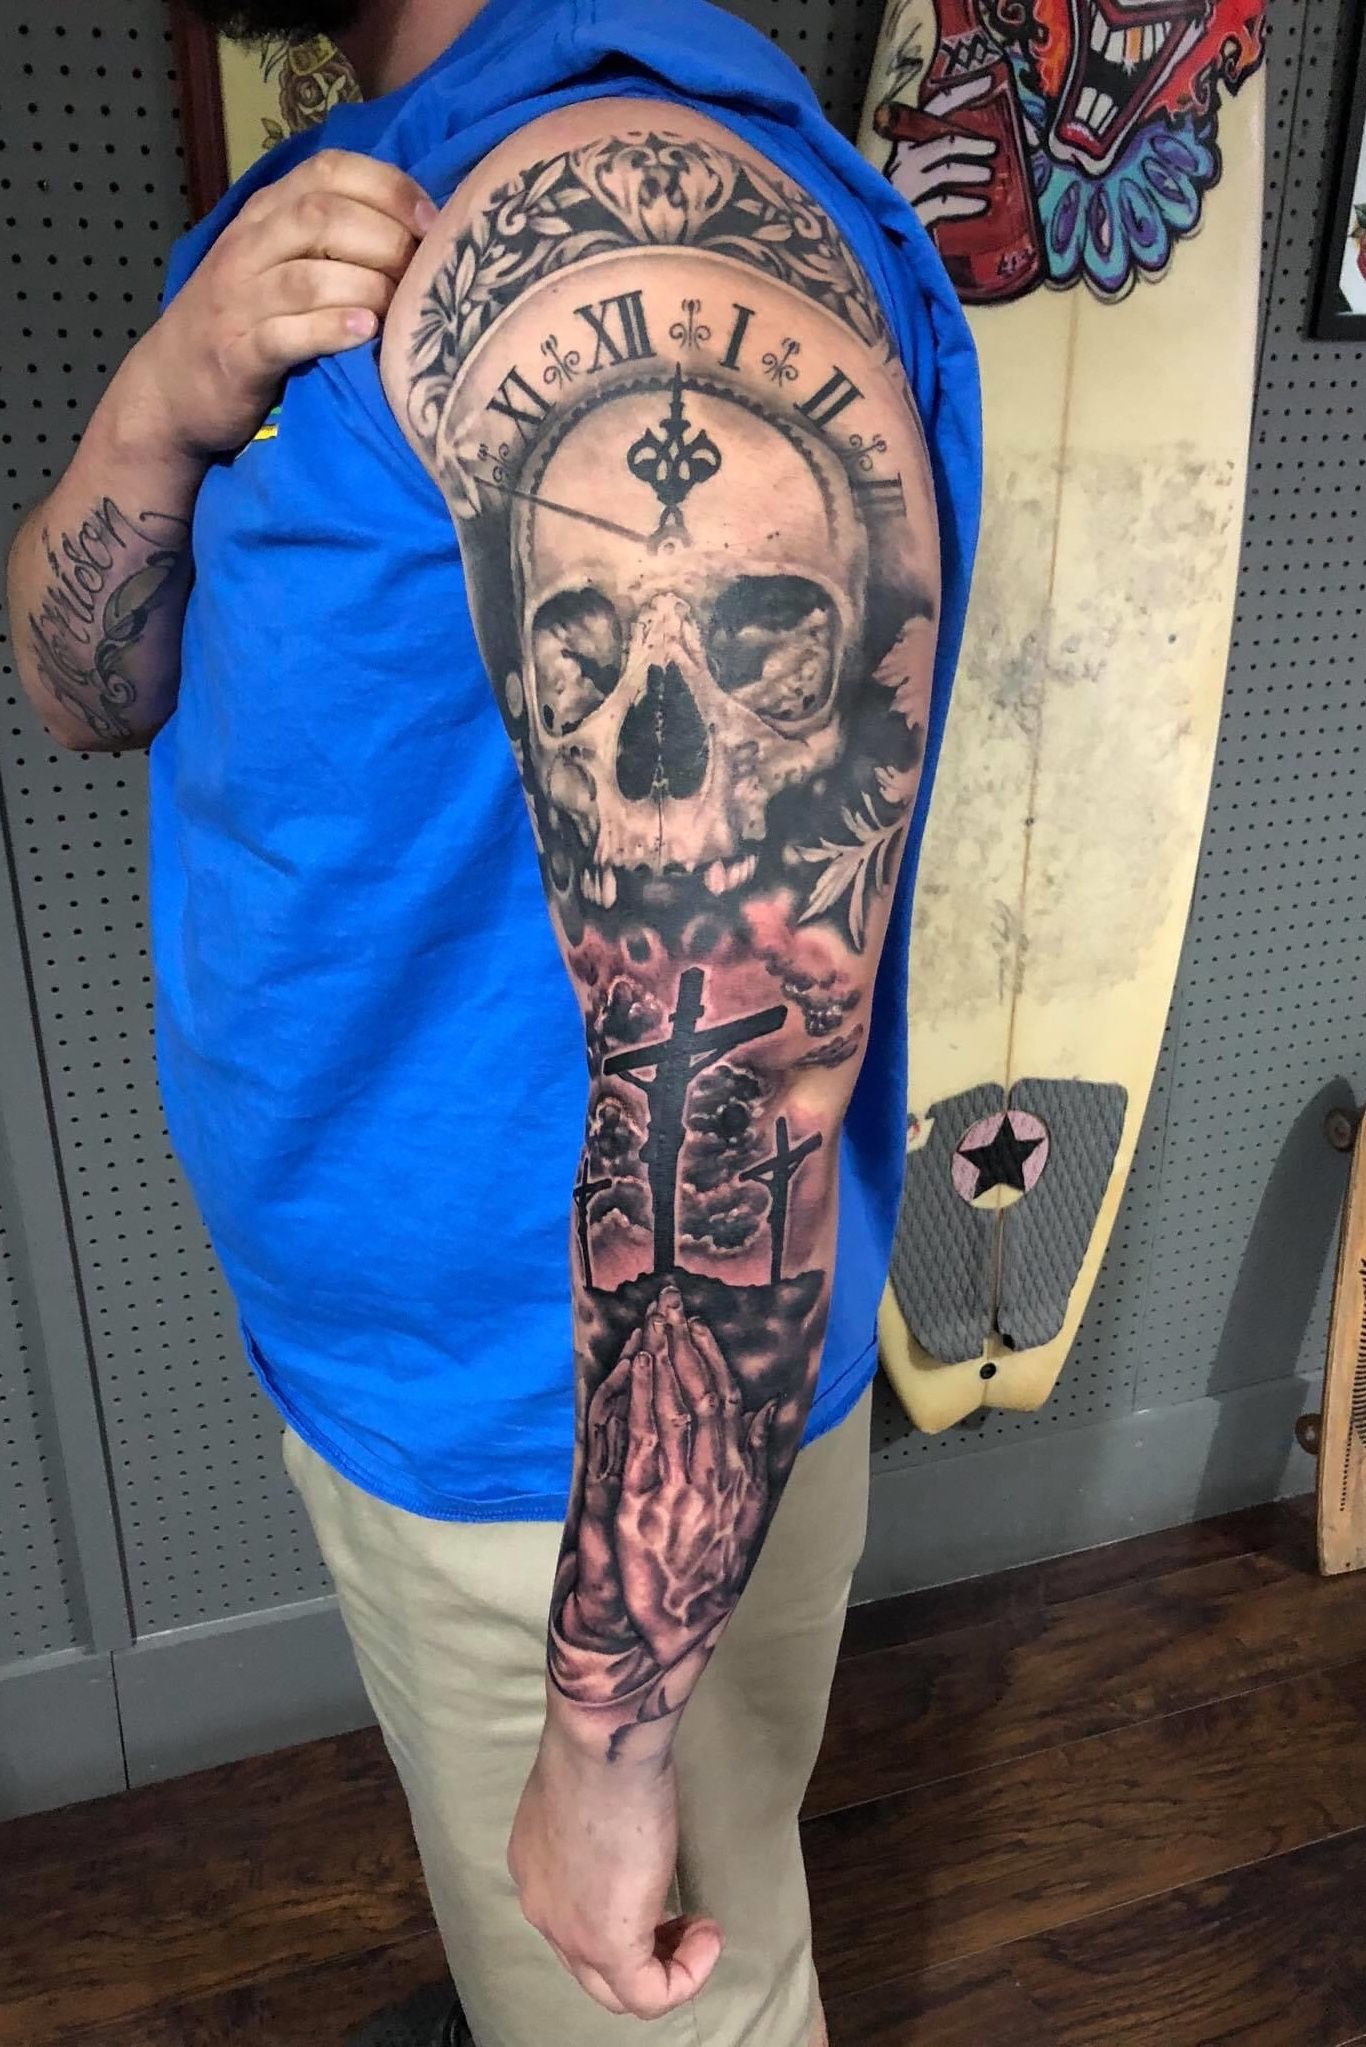 Tattoo uploaded by Xavier  Sugar skull cross tattoo by David Poe  sugarskull dayofthedead skull cross  Tattoodo